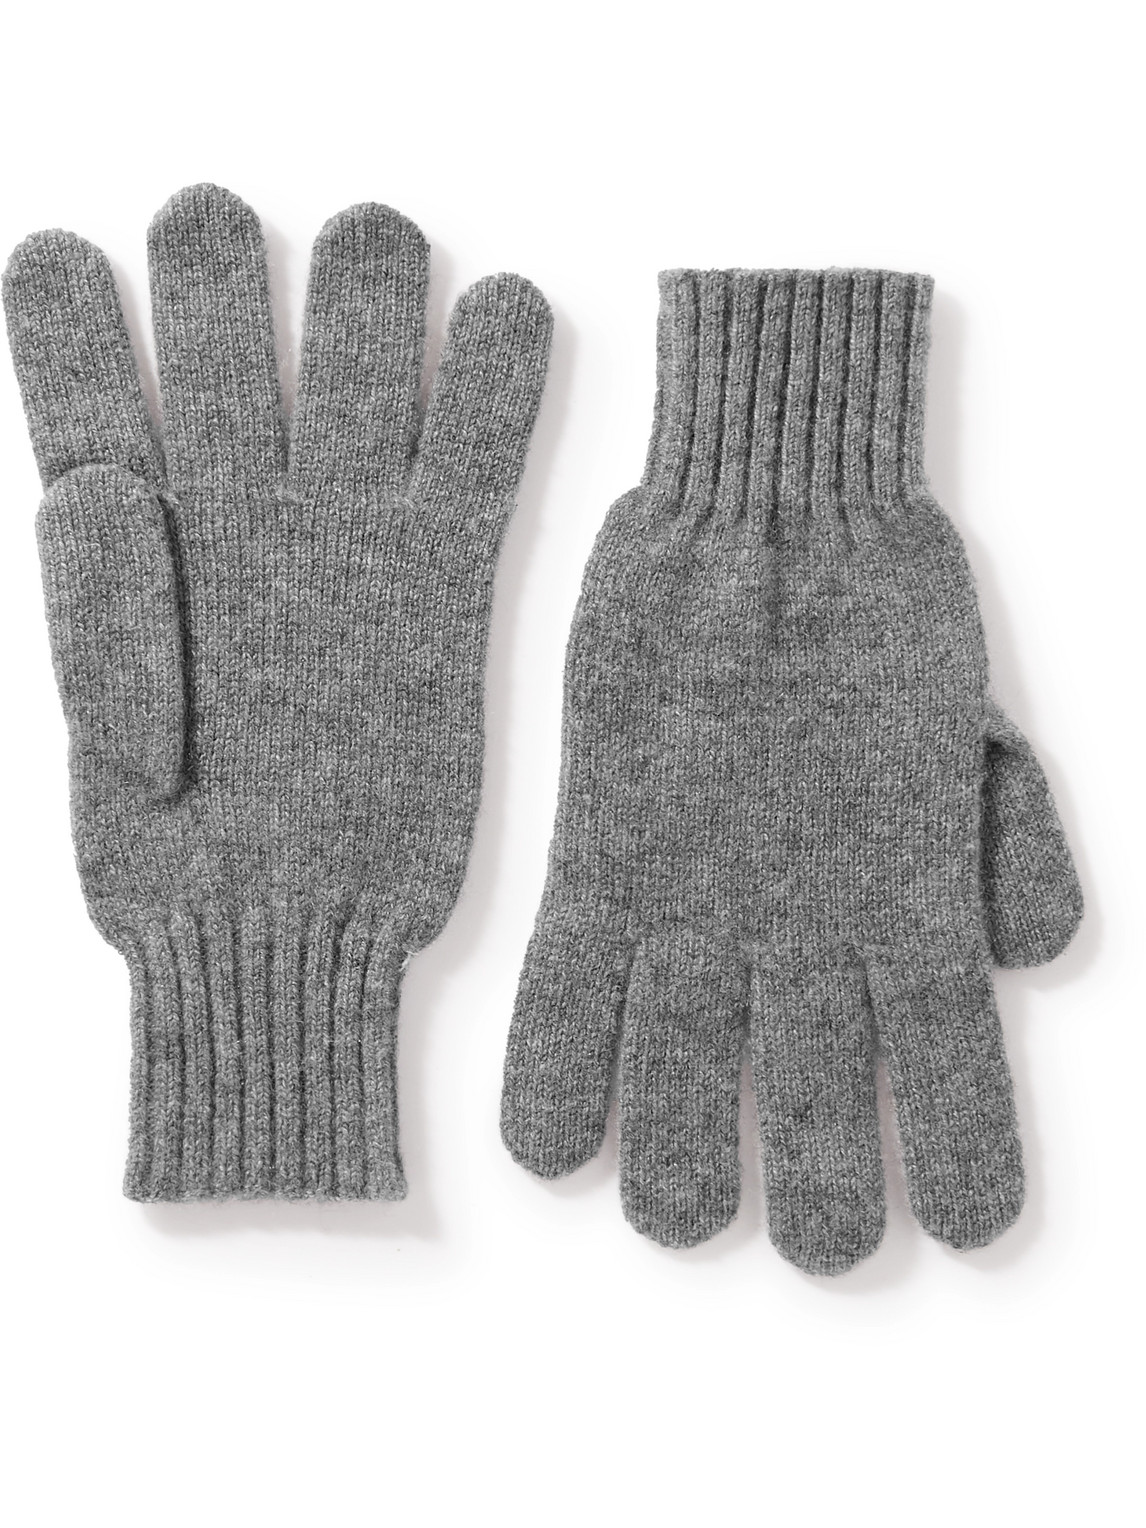 Rubinacci Cashmere Gloves In Gray